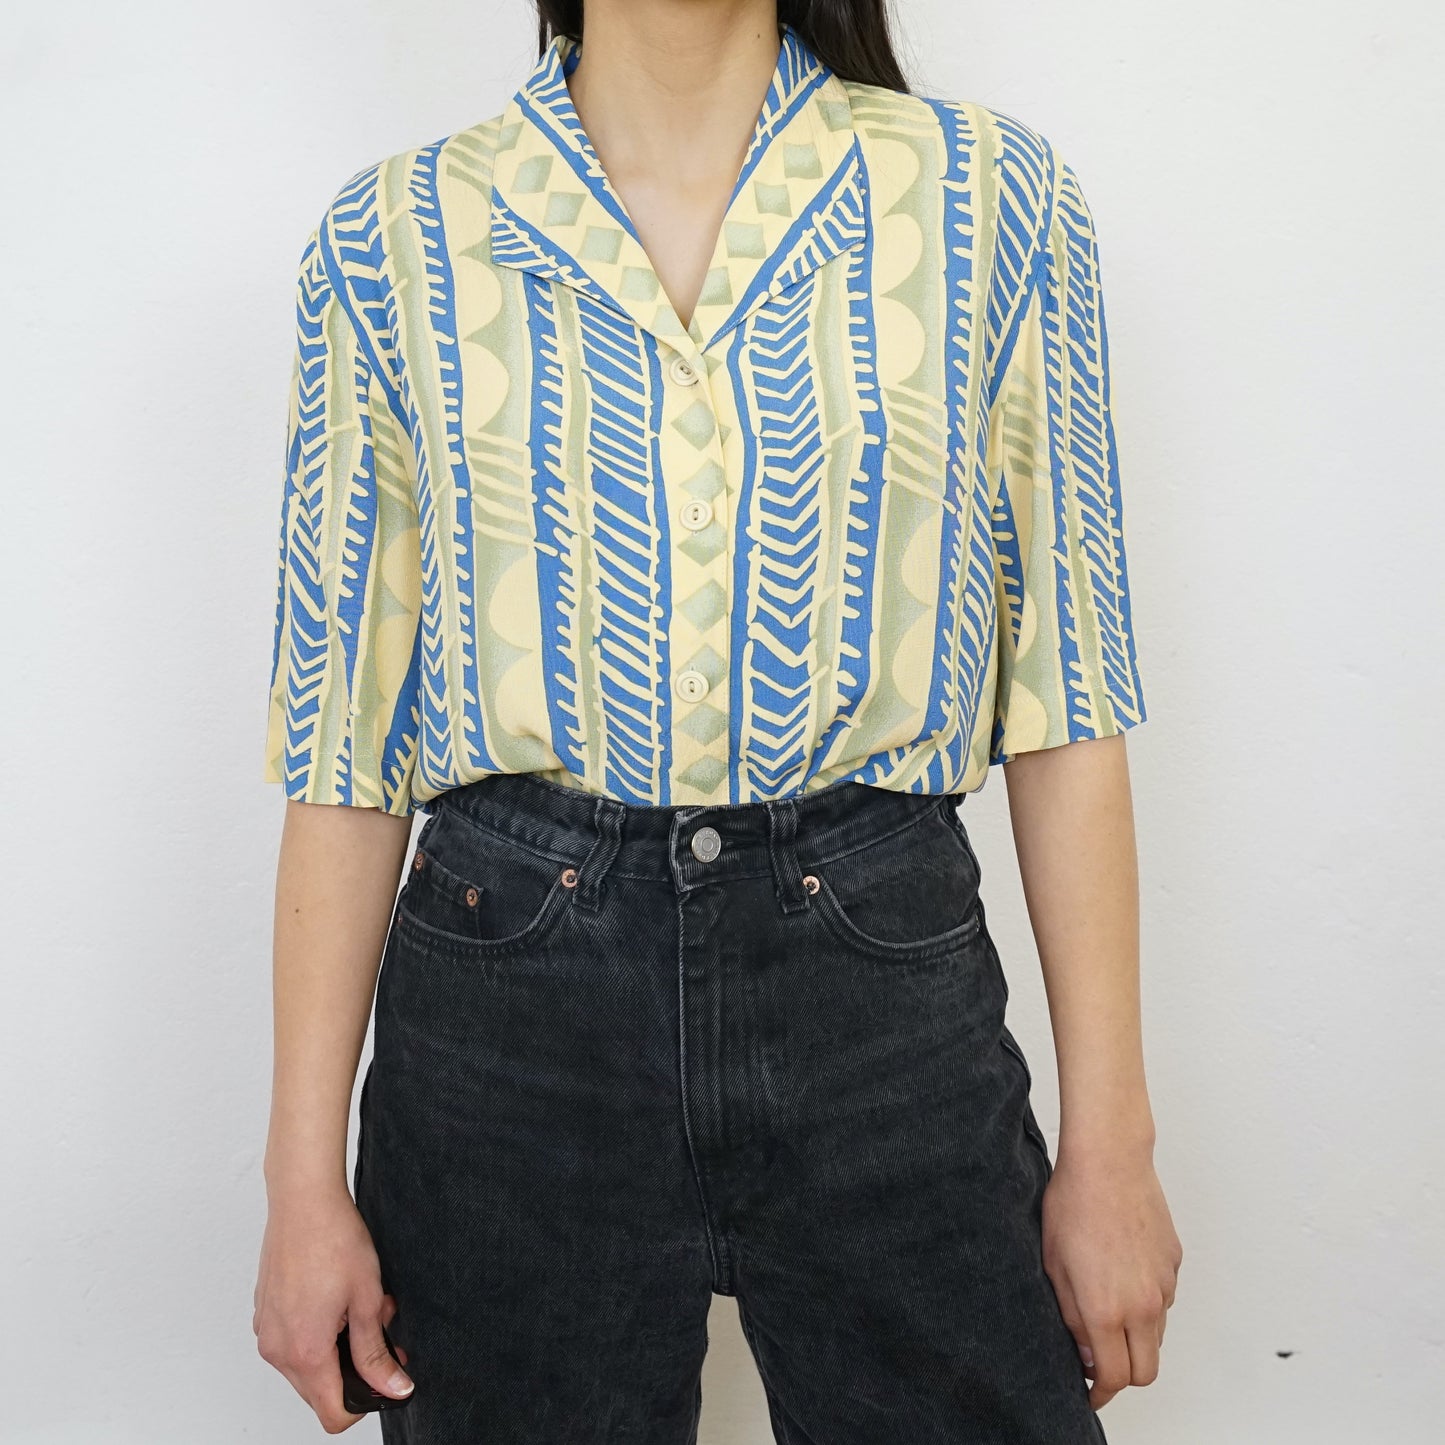 Vintage colorful Shirt size L